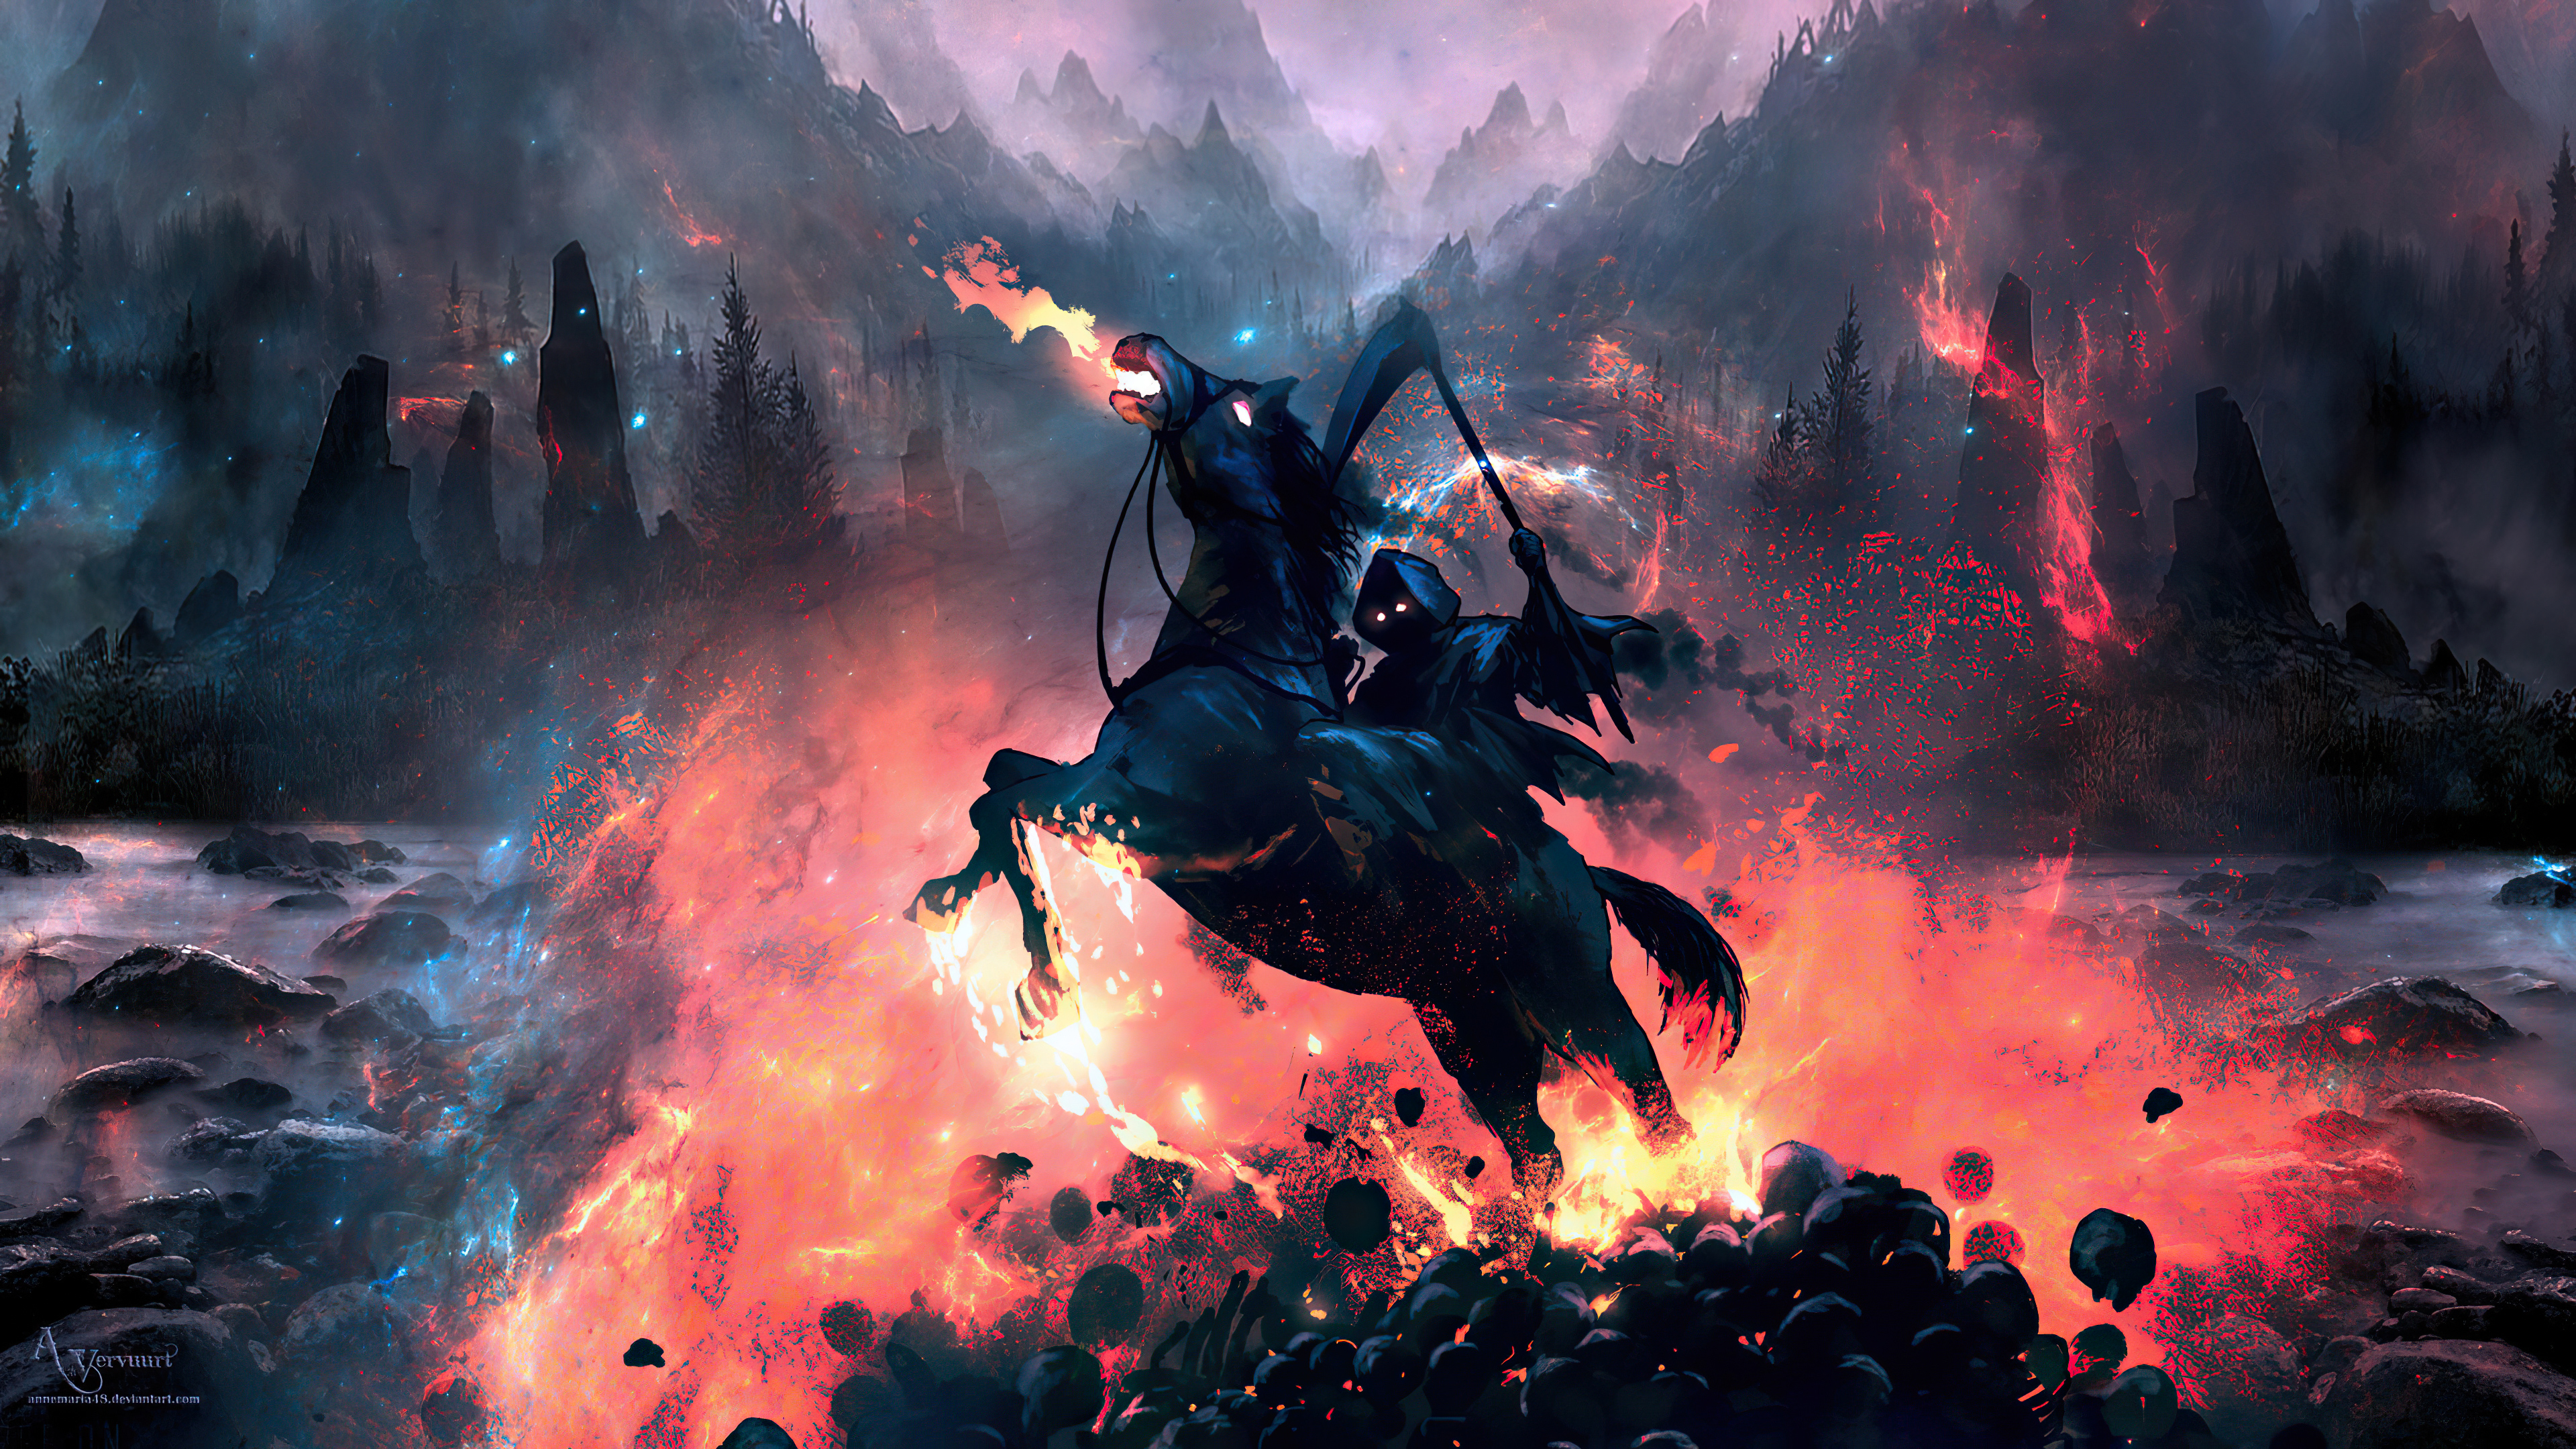 Grim Reaper HD Wallpapers | 4K Backgrounds - Wallpapers Den